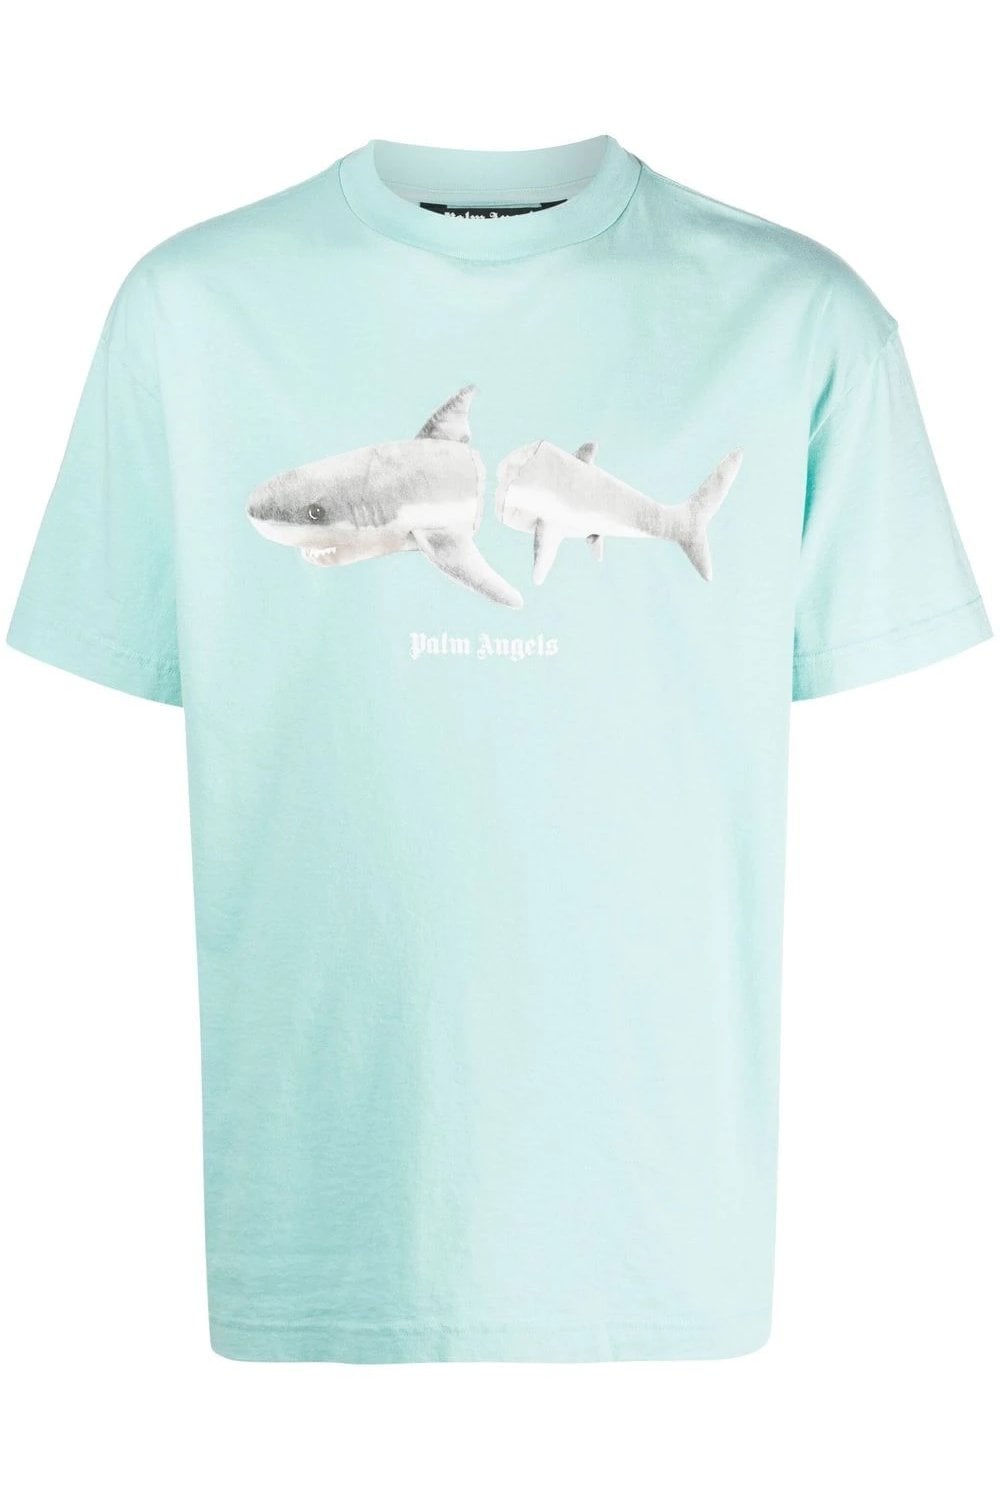 Palm Angels Shark T Shirt Aqua